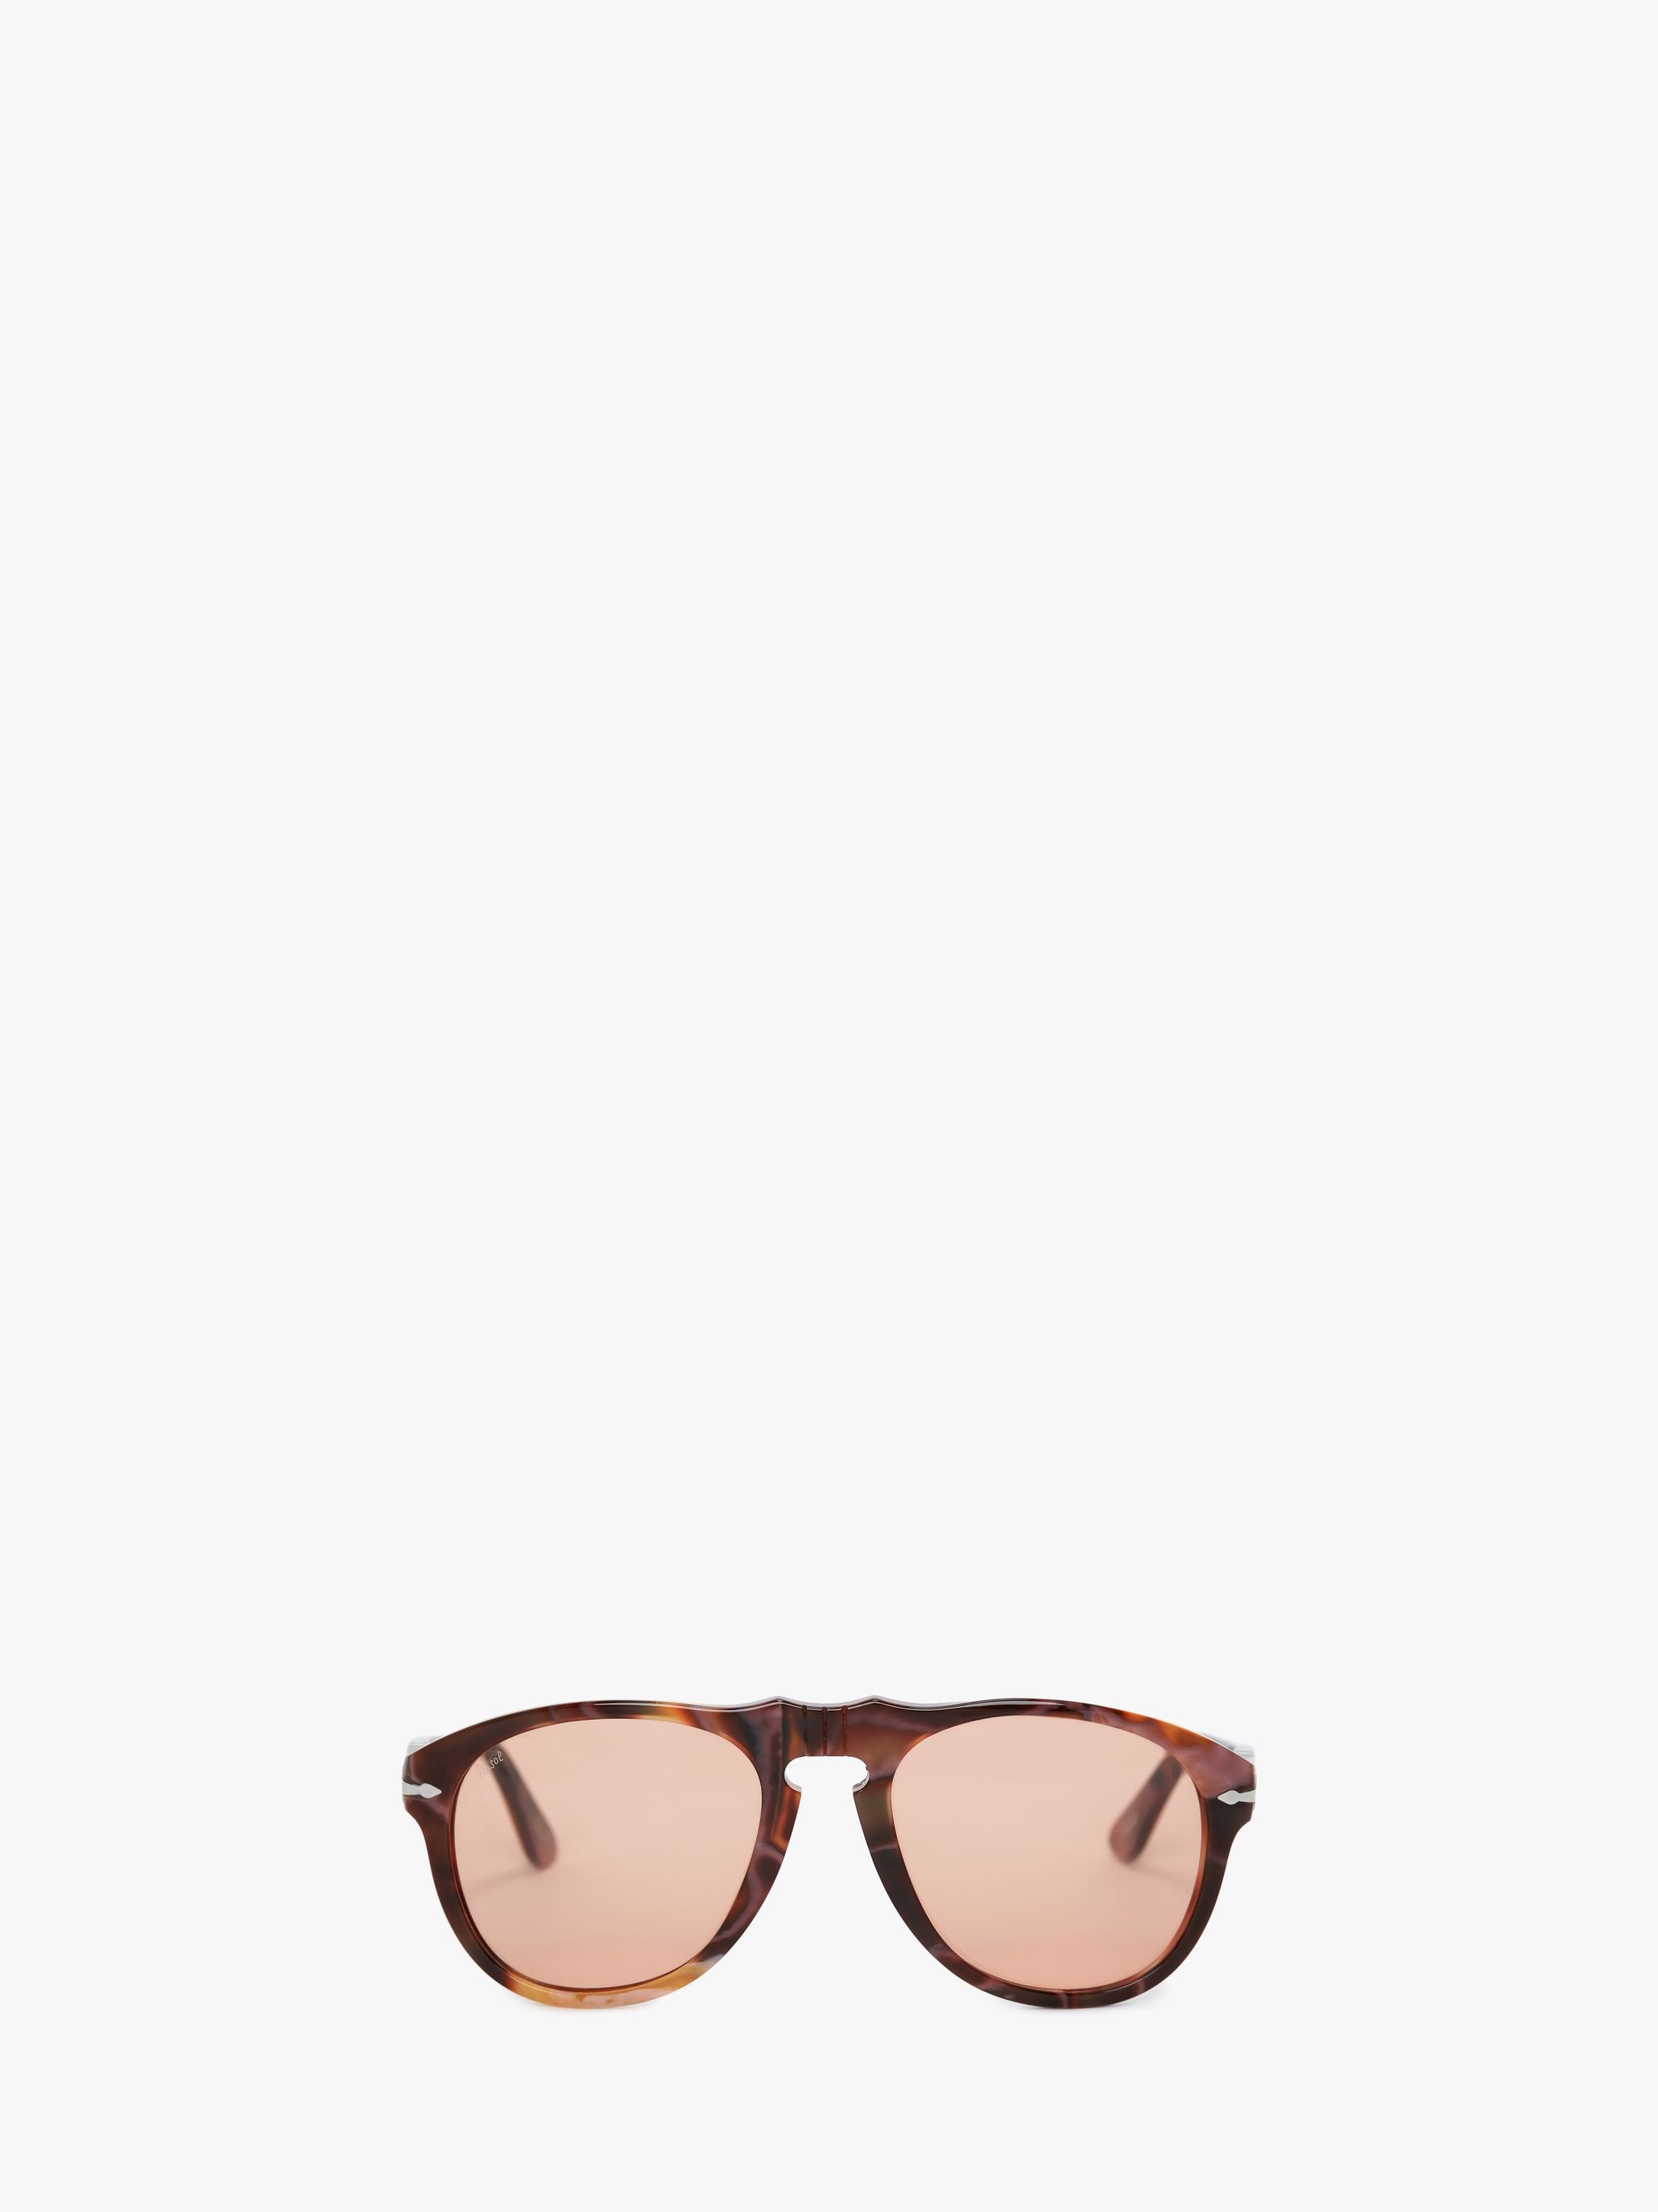 Солнцезащитные очки - авиатор JW Anderson, коричневый солнцезащитные очки fedrov авиаторы оправа металл поляризационные черный